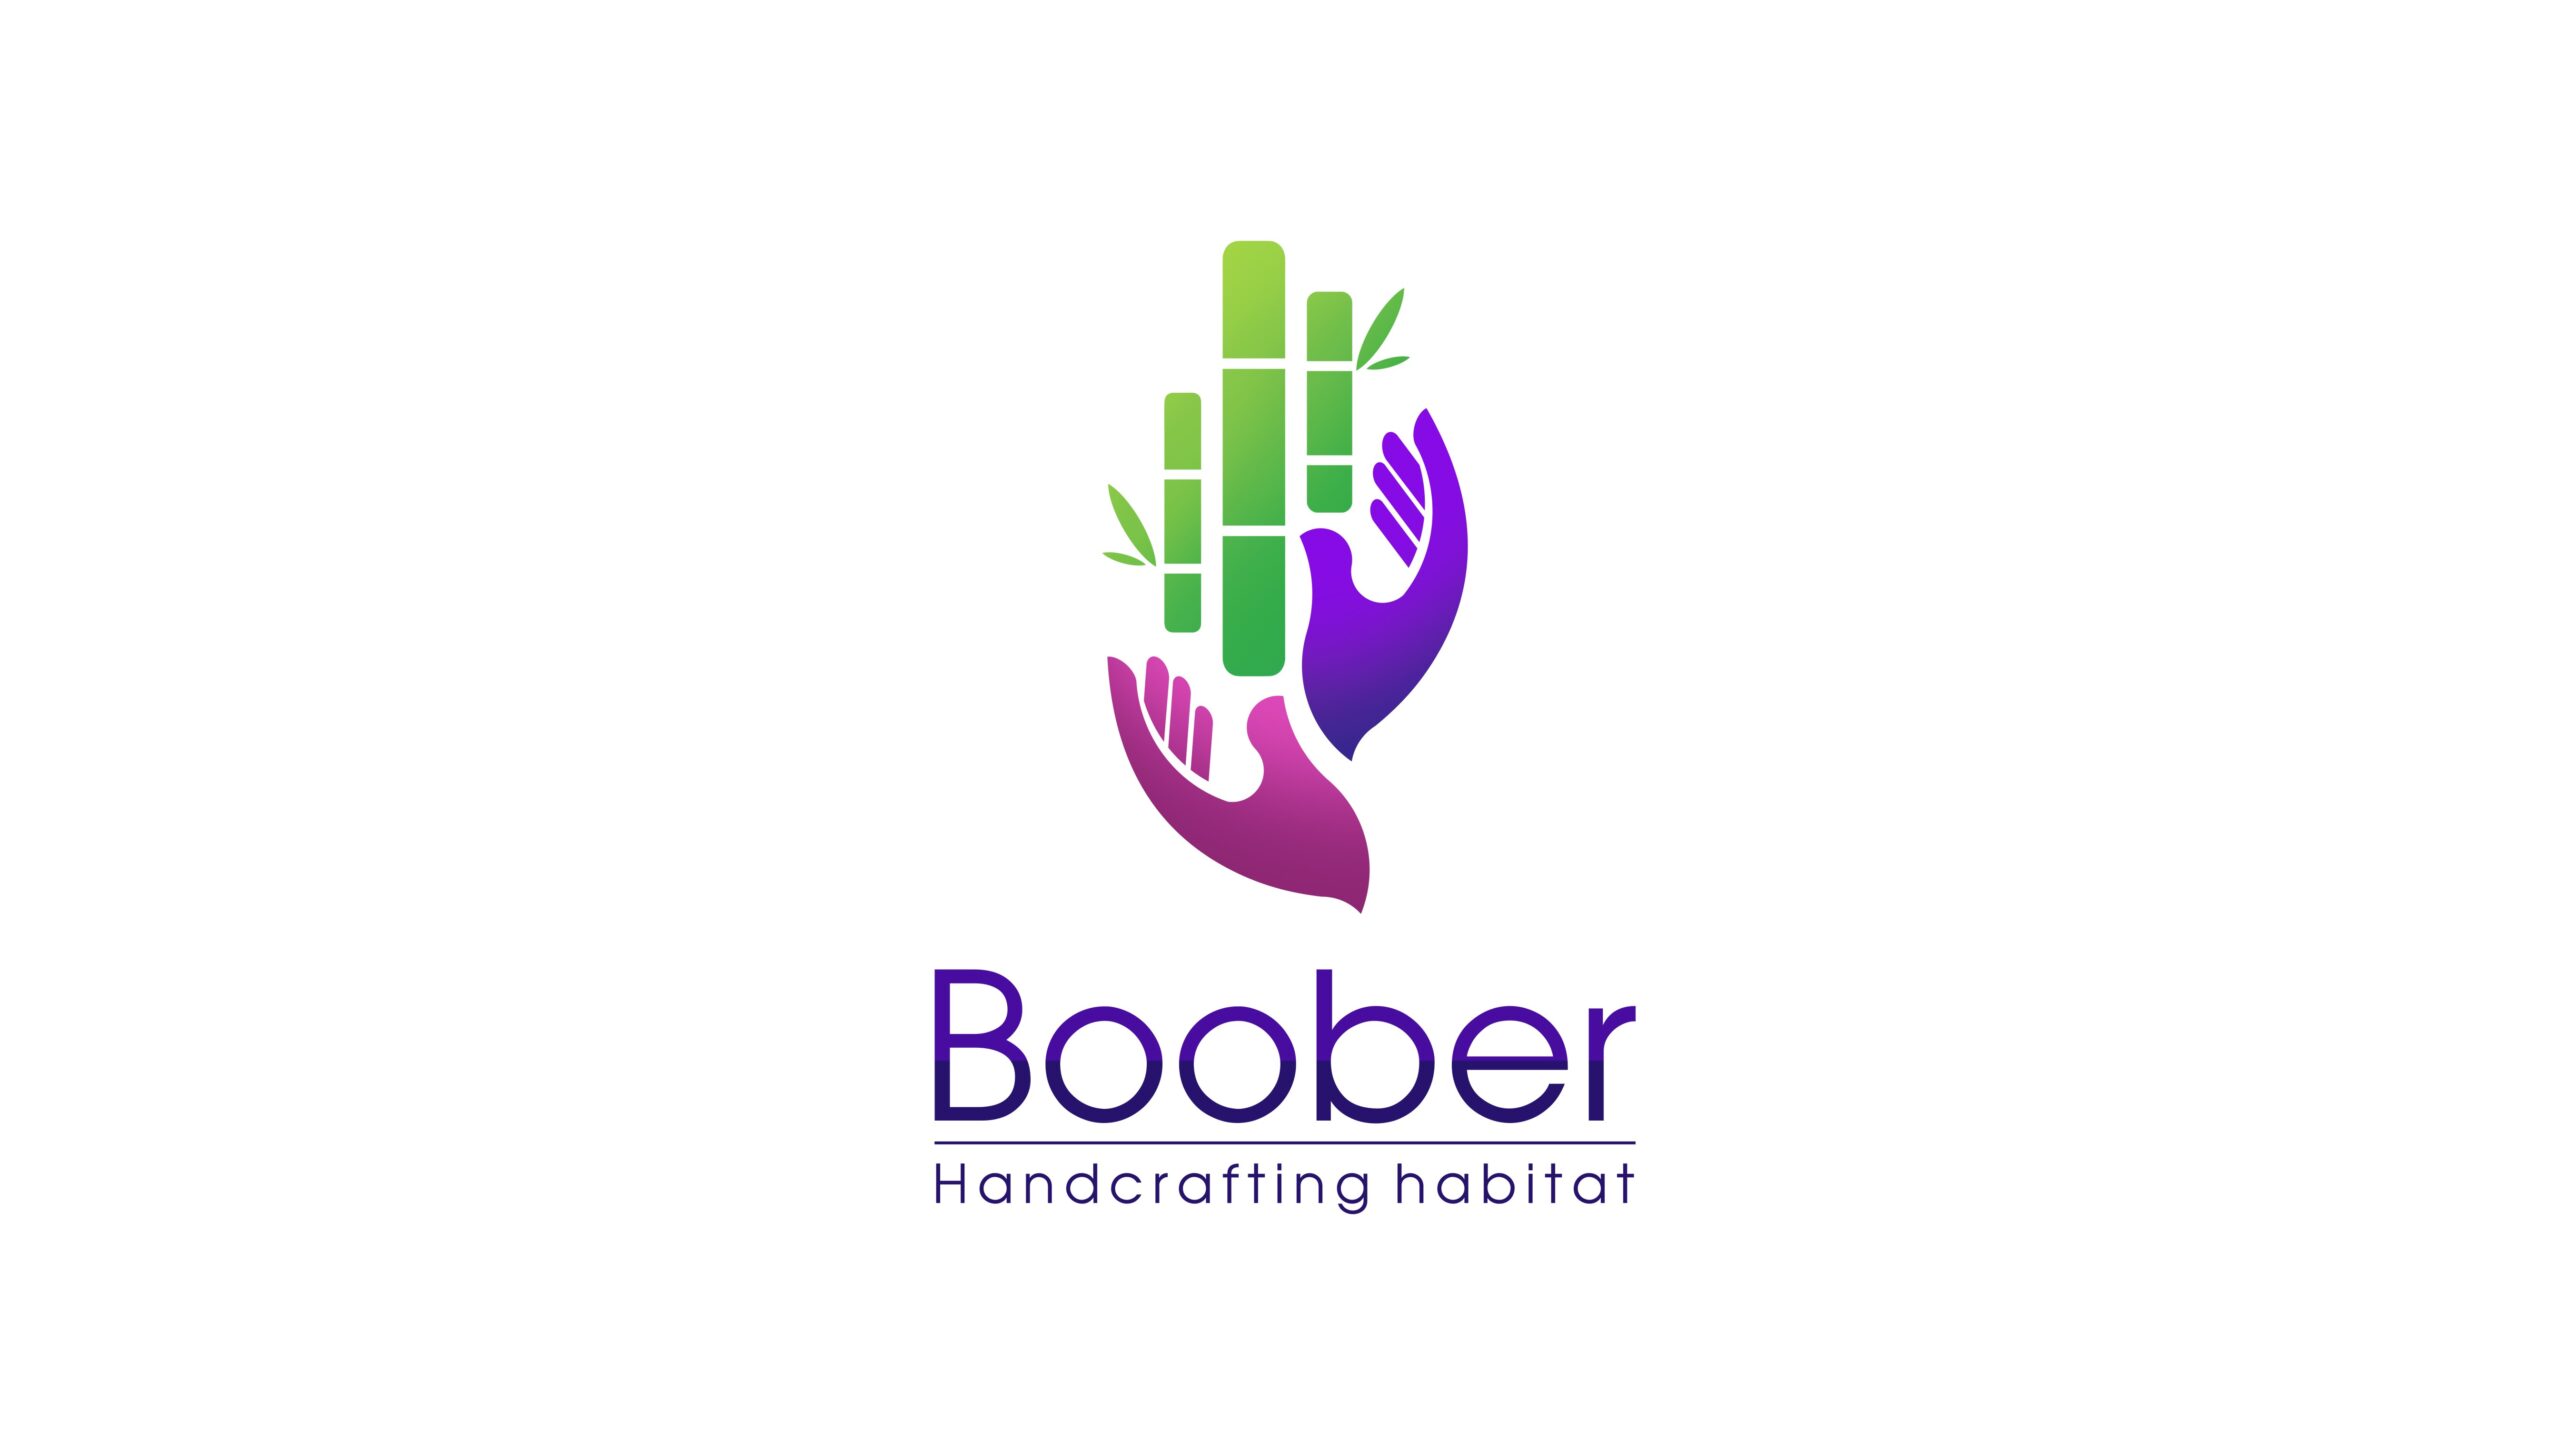 Boober – Bamboo and Cane craft